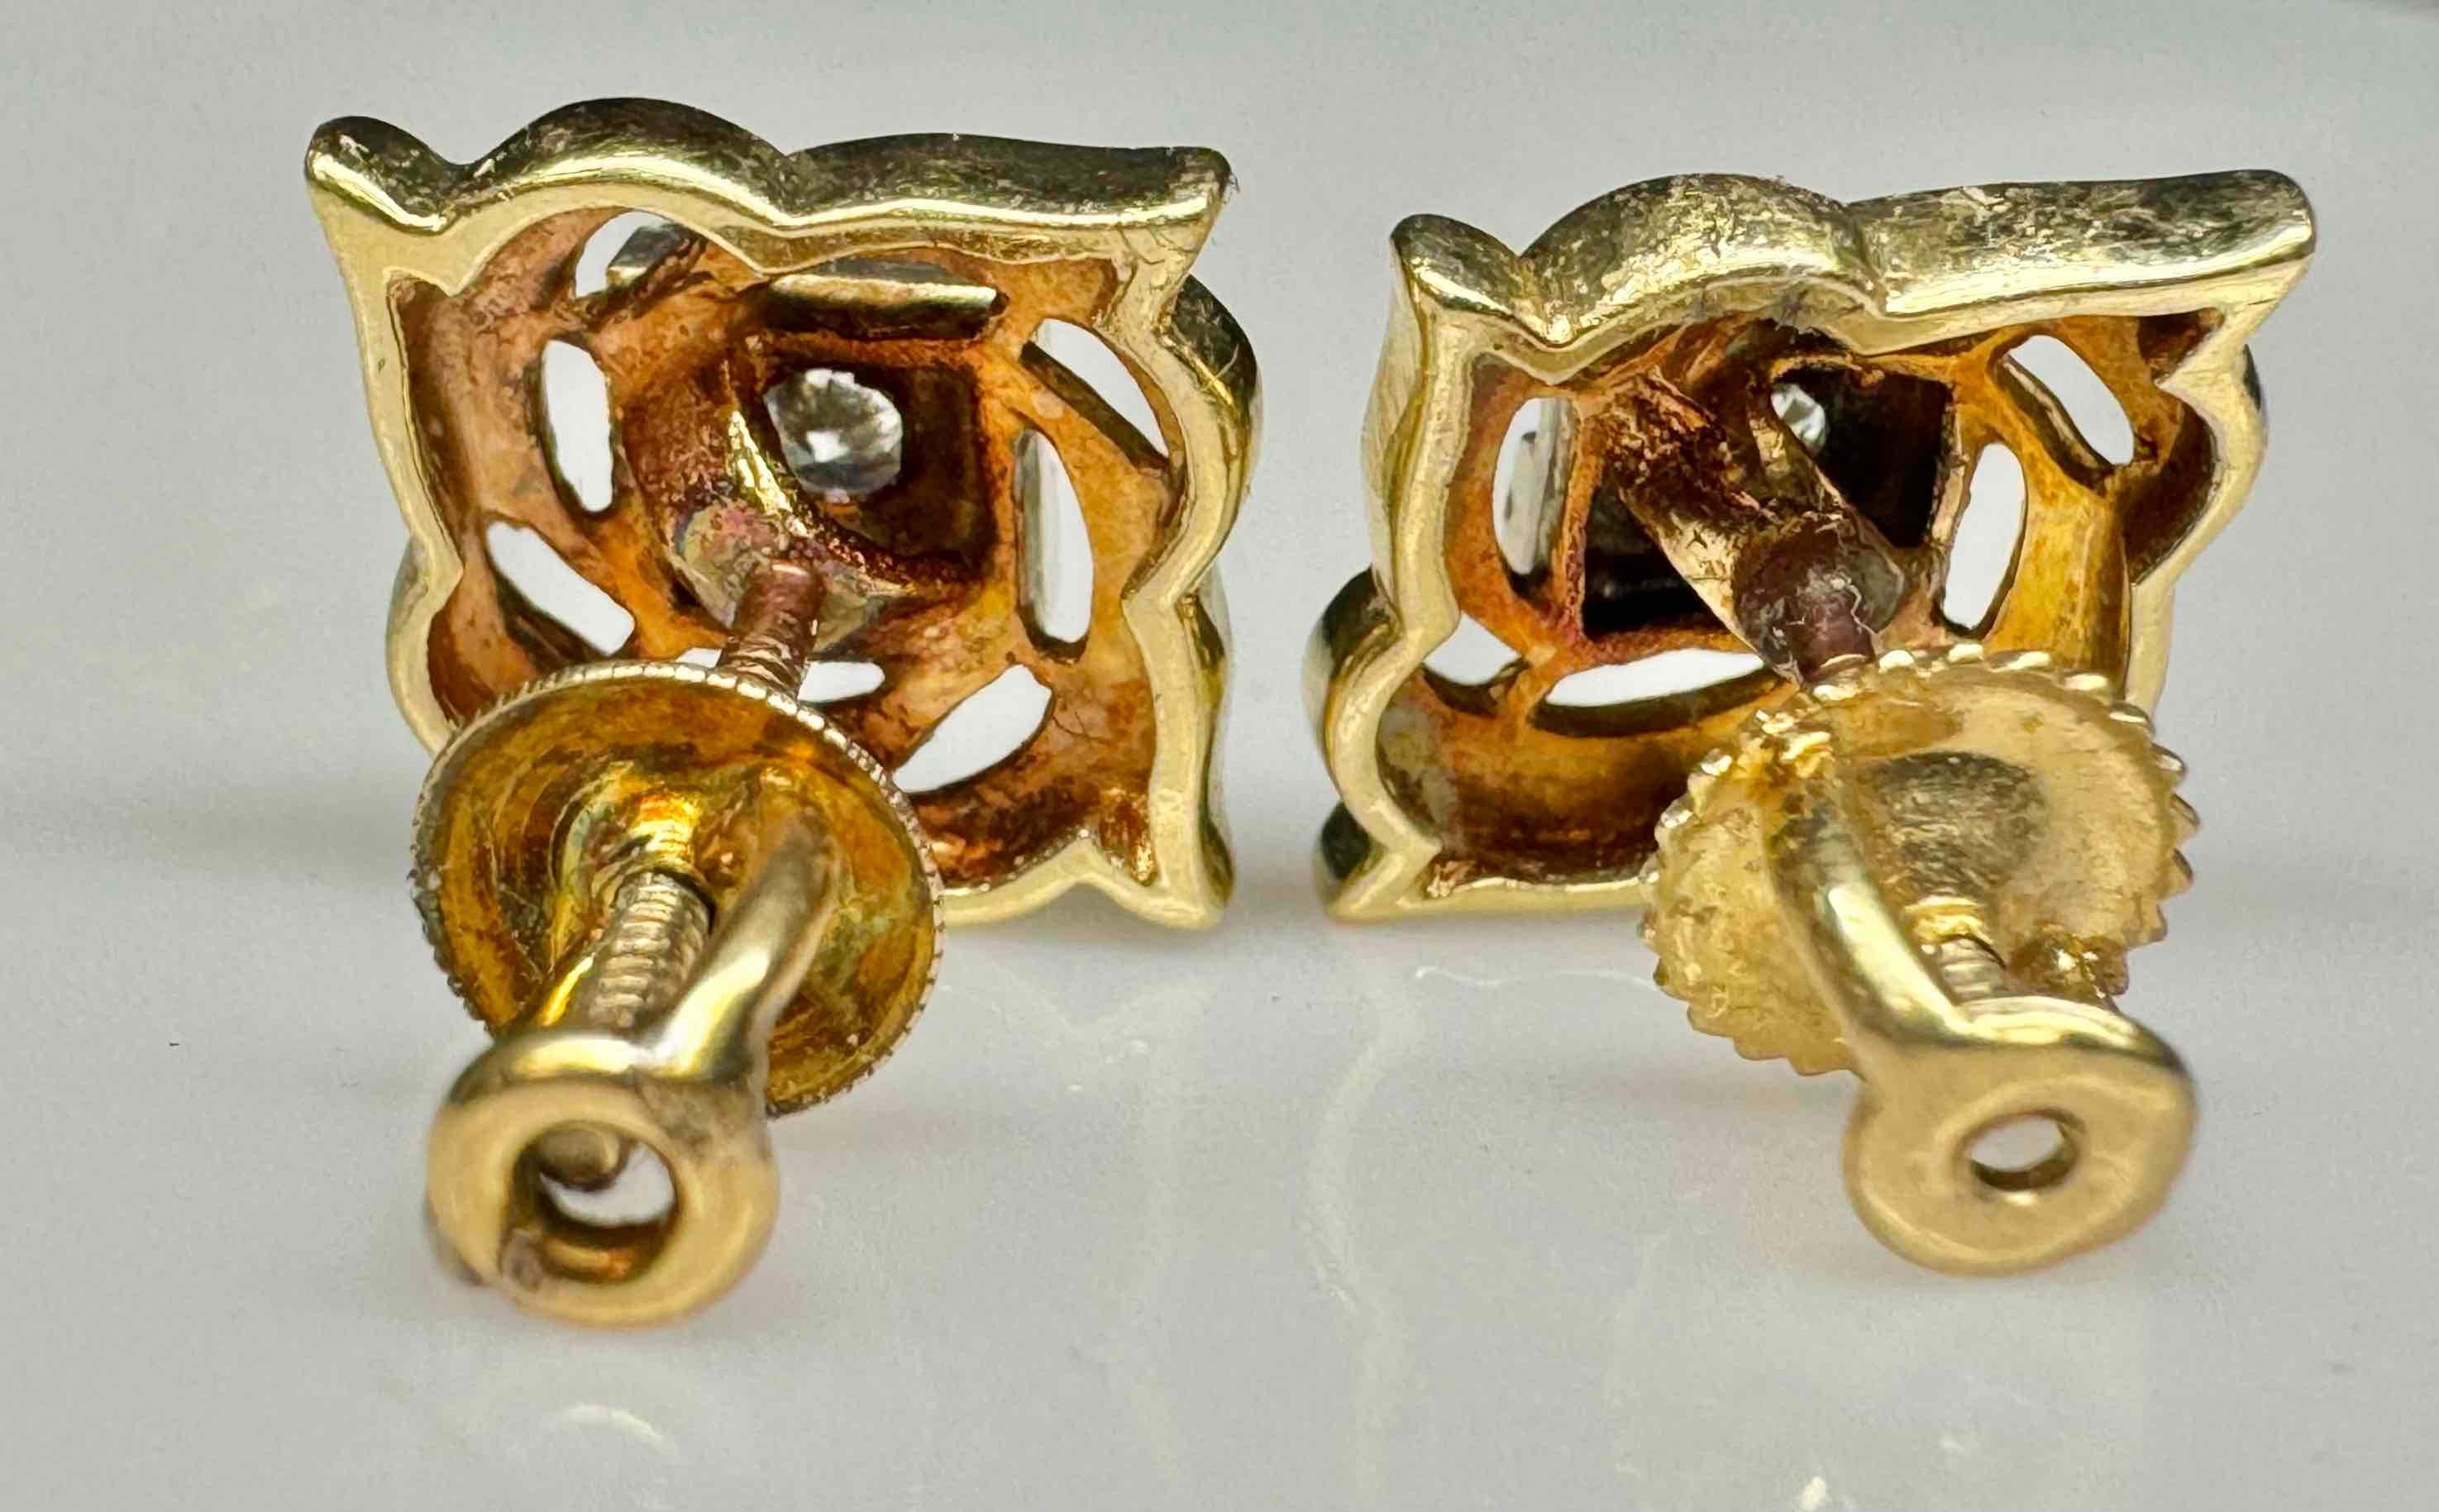 Pair of 14k Gold Diamond Earrings 3.17g Total